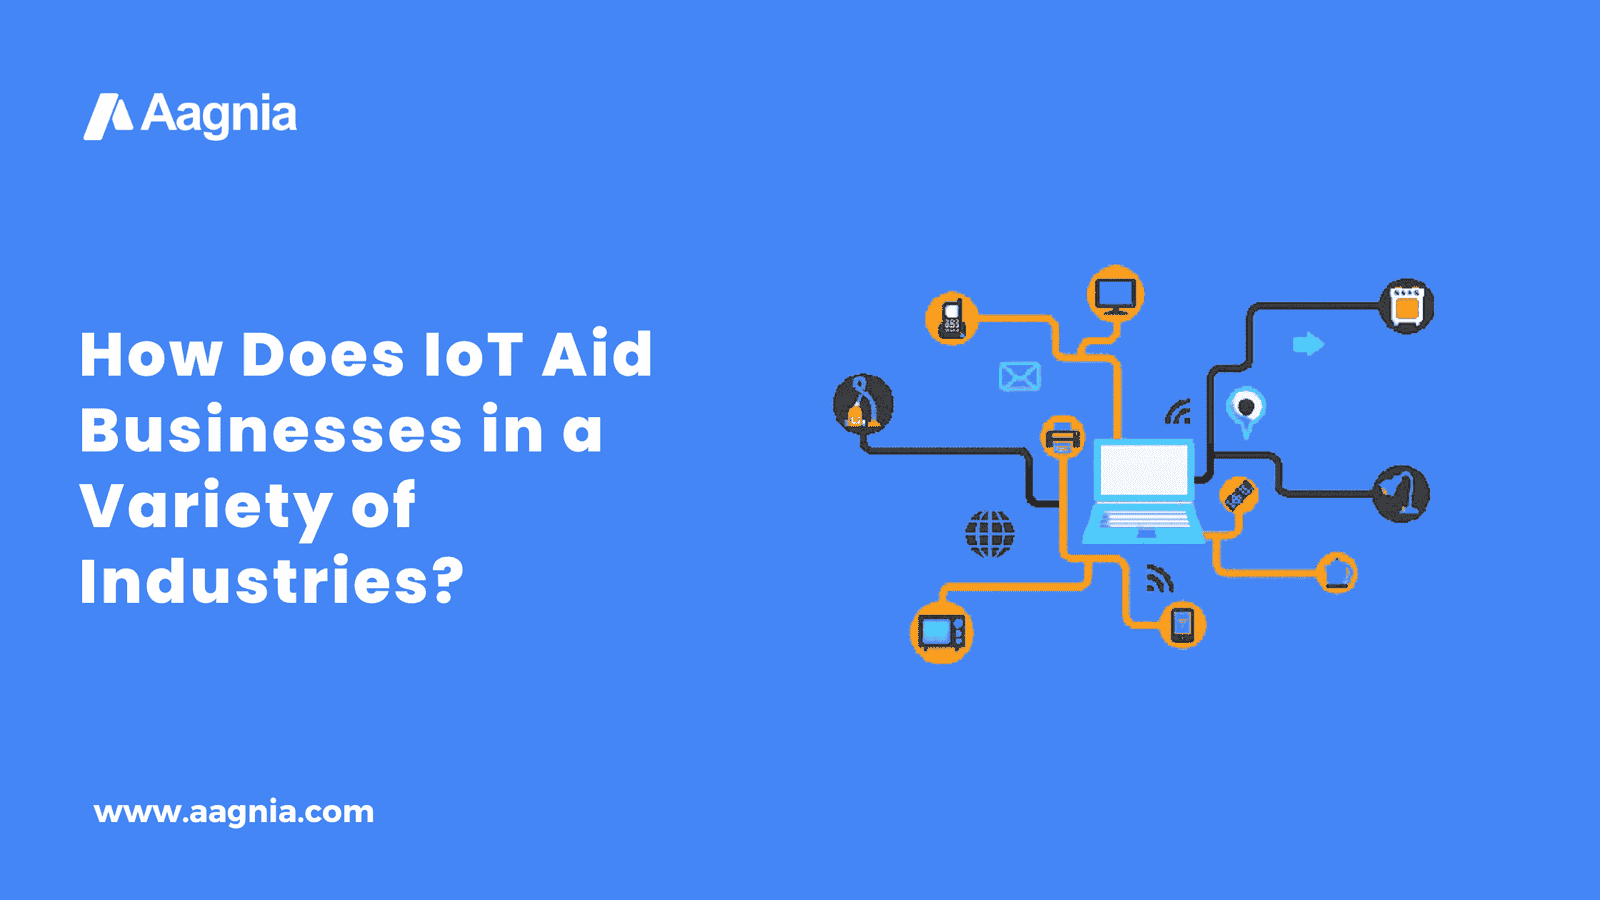 IoT Aid Businesses